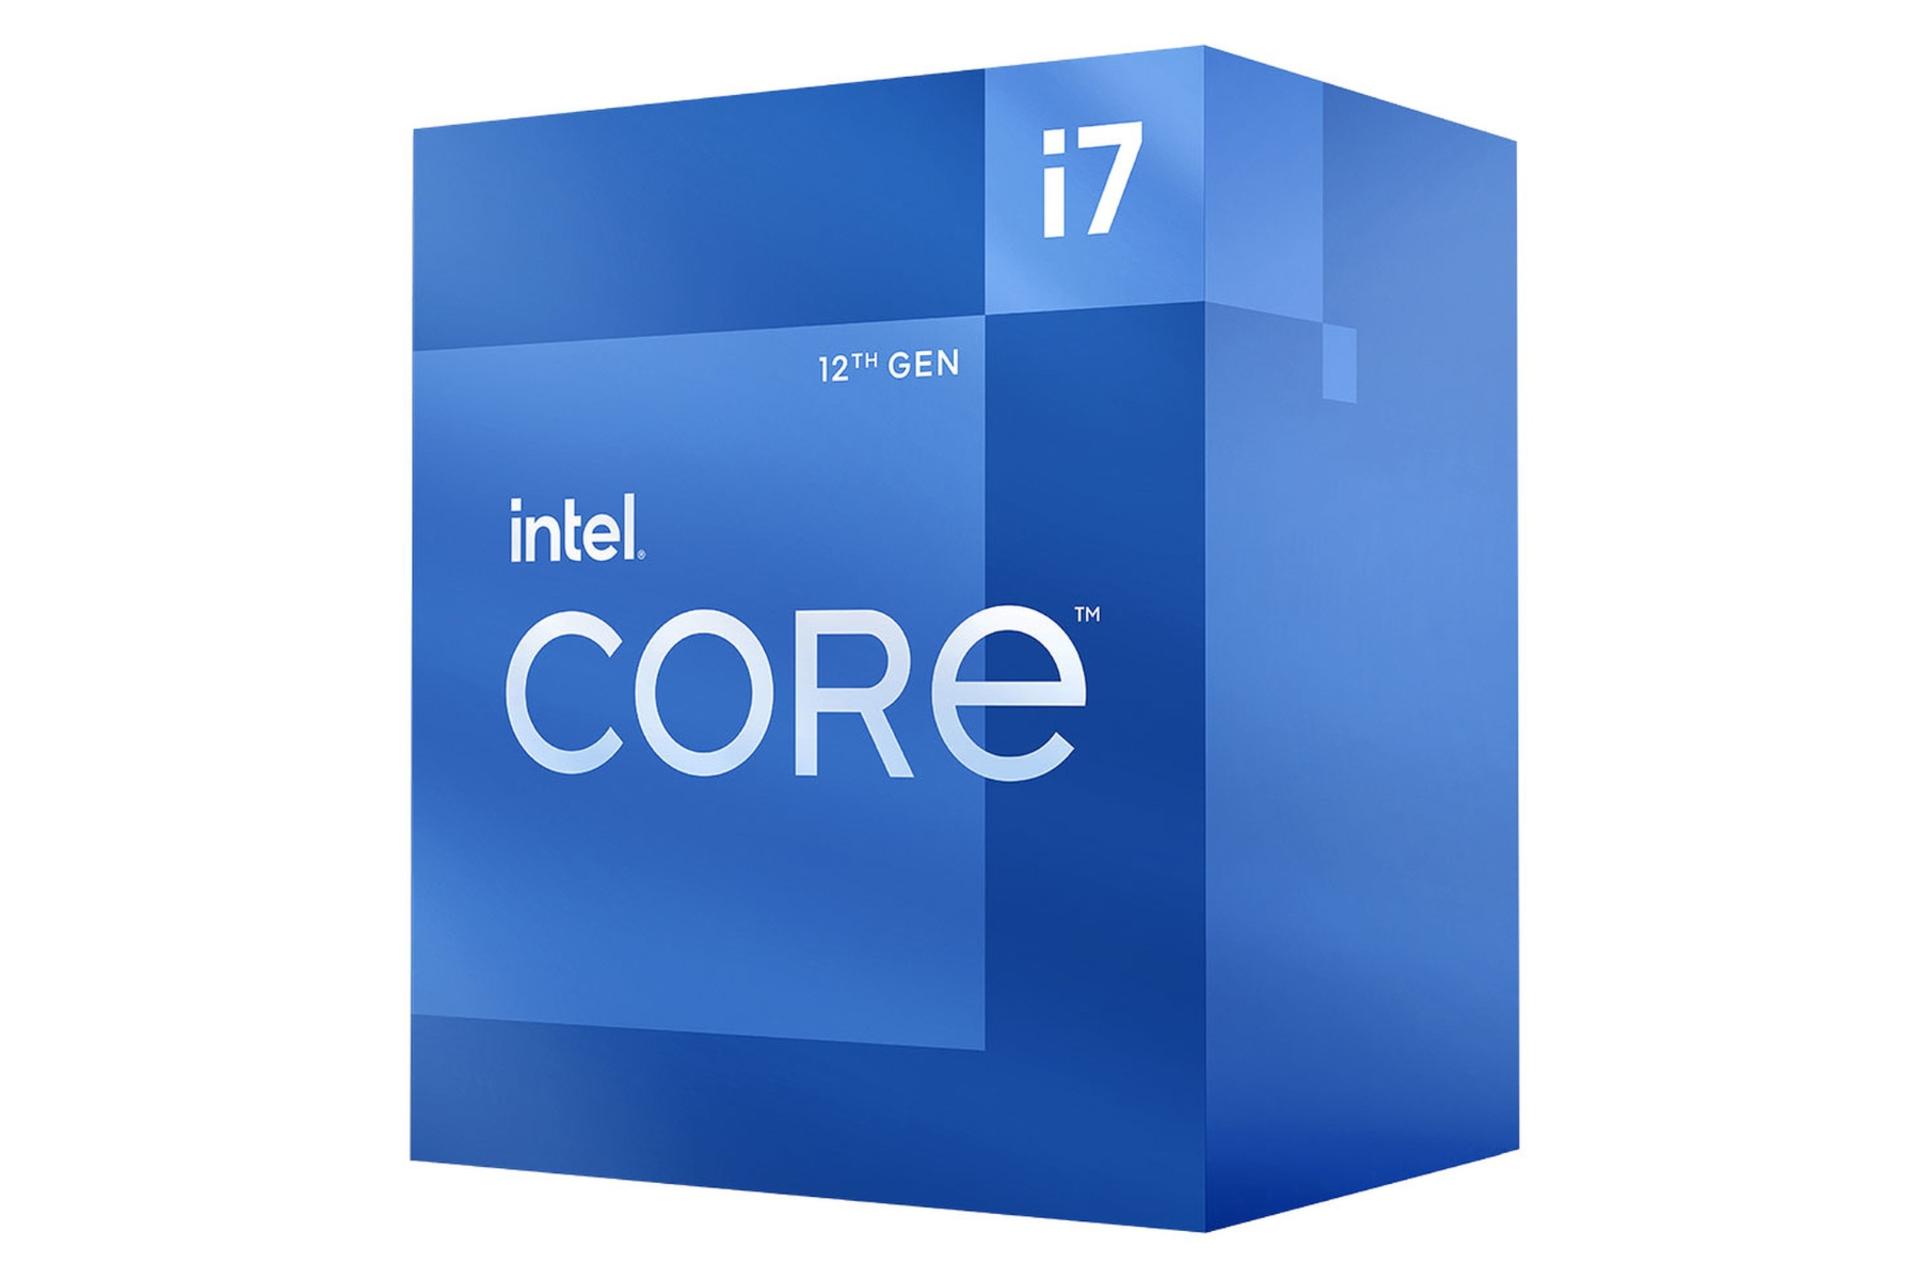 نمای راست جعبه پردازنده اینتل Core i7 نسل دوازدهم / Intel Core i7 12th Gen